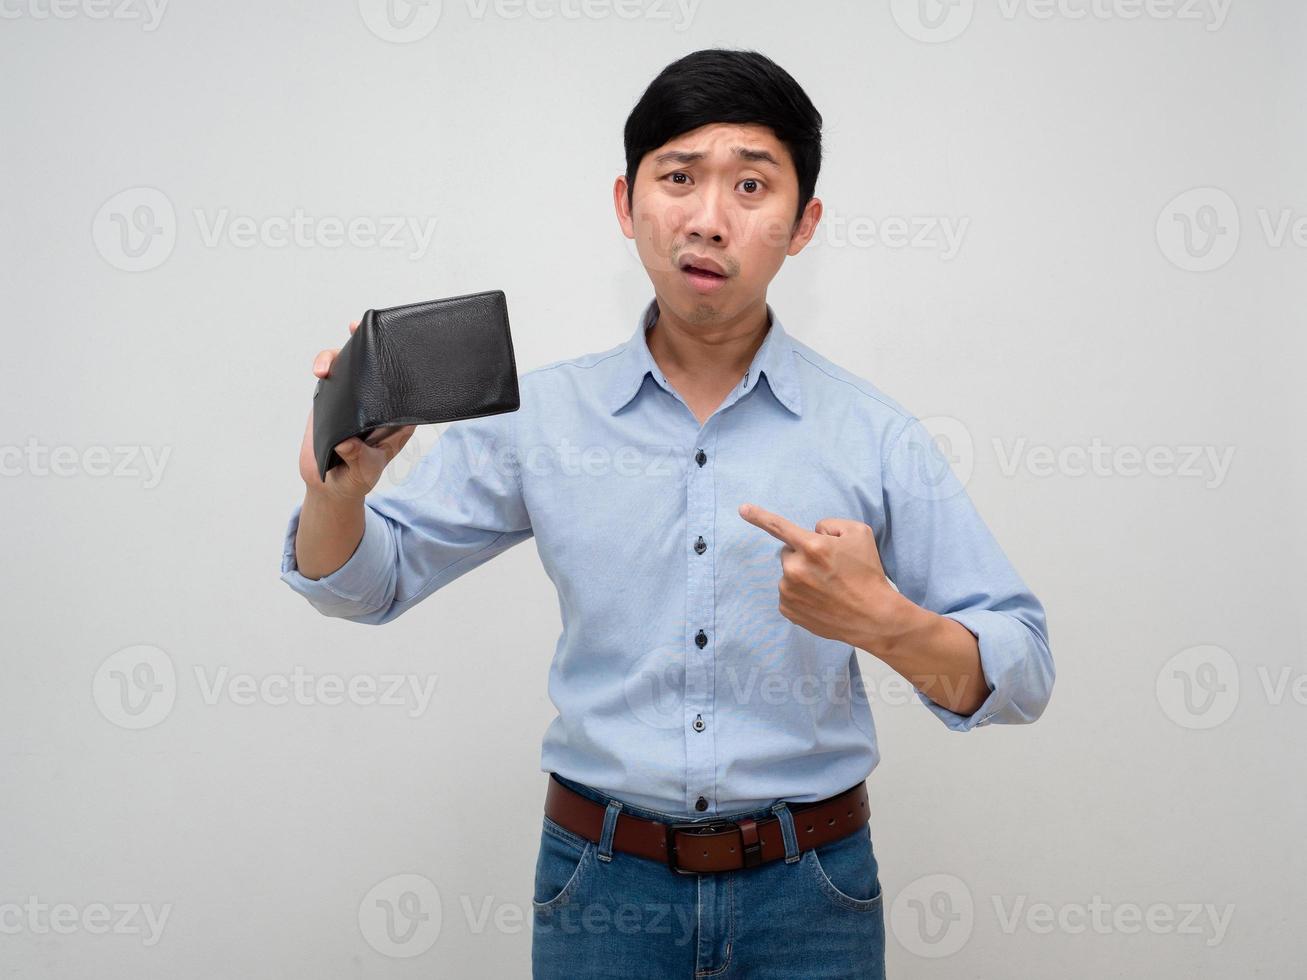 arm zakenman Holding leeg portemonnee voelt verdrietig gebaar punt vinger Bij zichzelf geïsoleerd foto